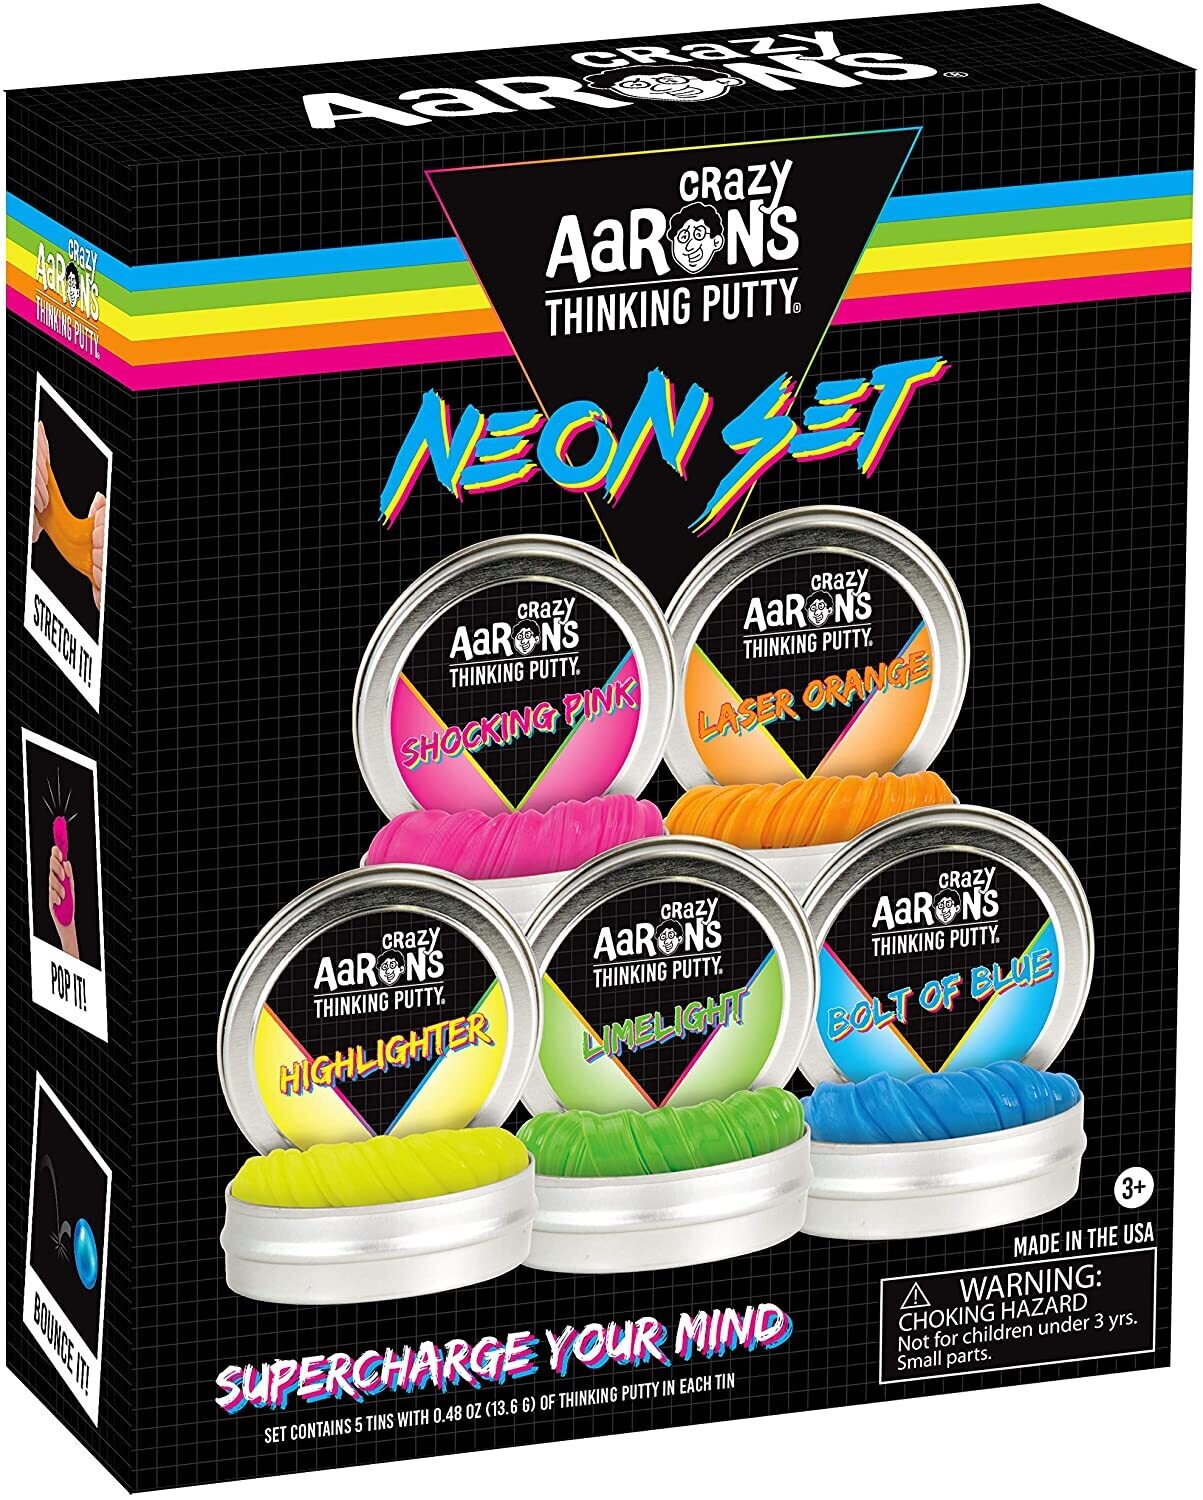 Crazy Aaron's Neon Gift Set